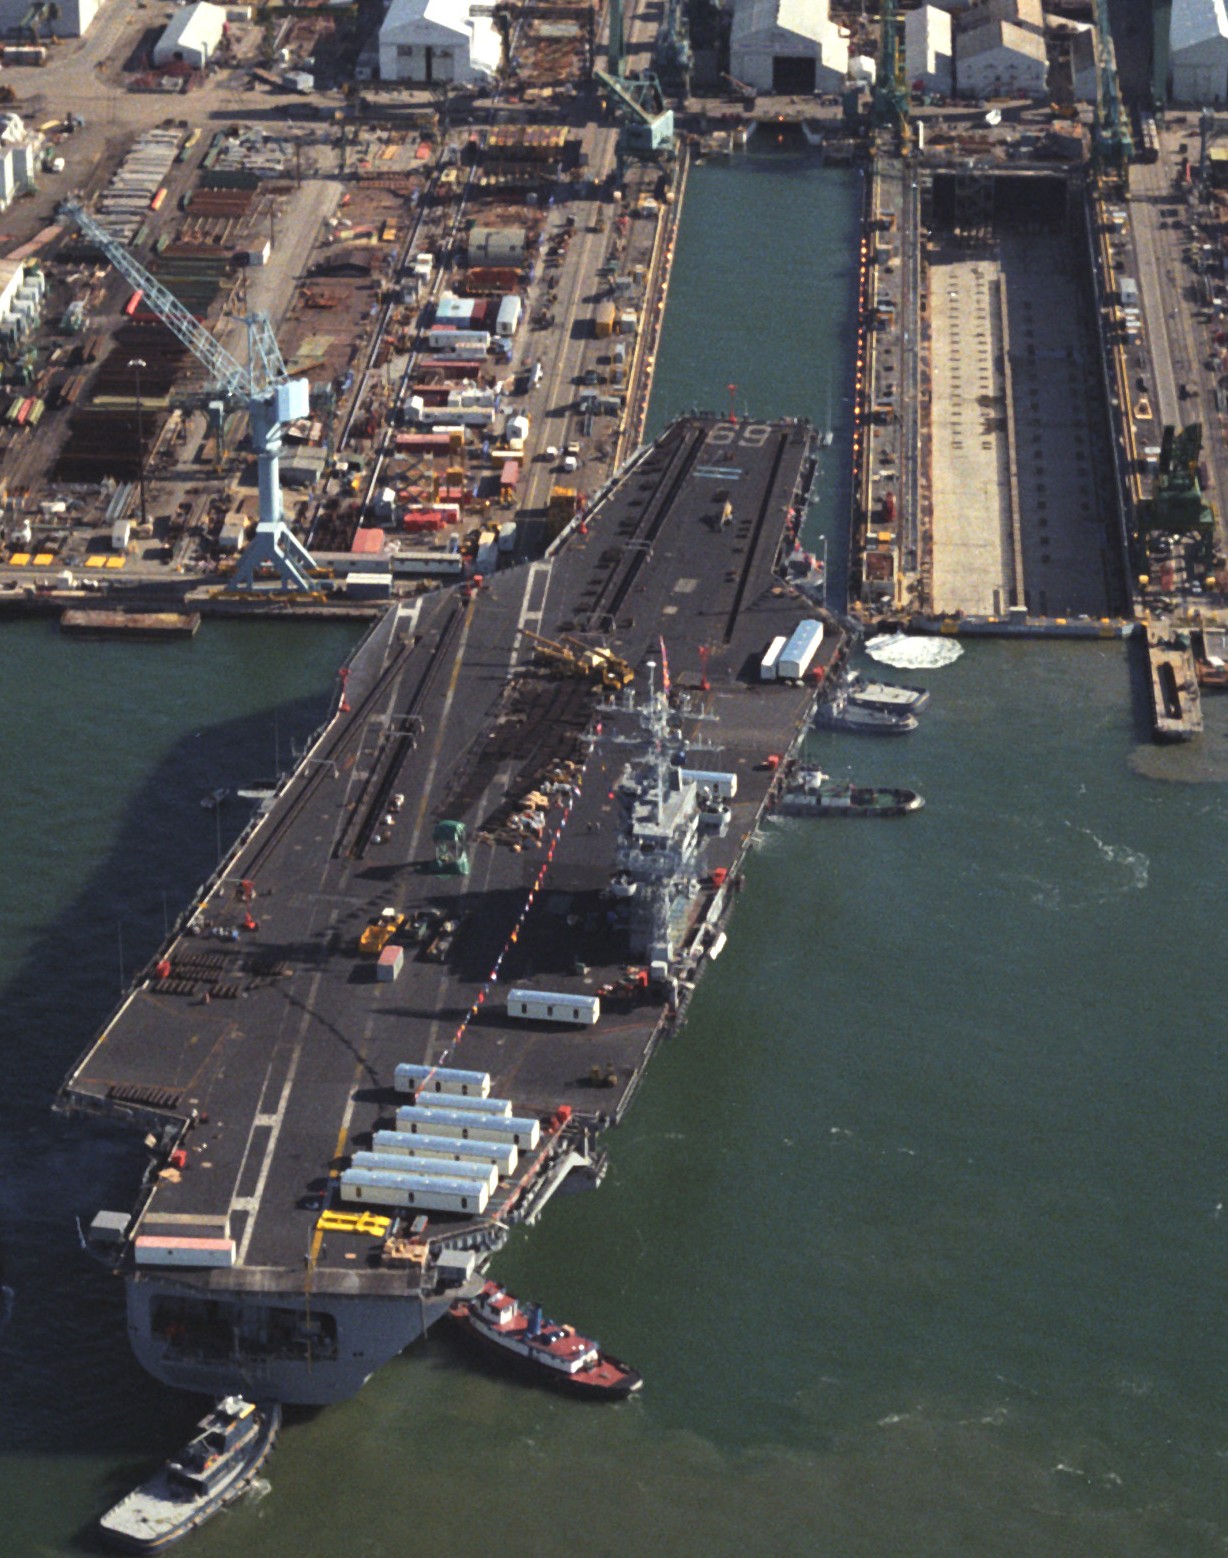 cvn-69 uss dwight d. eisenhower aircraft carrier us navy dry dock newport news 307